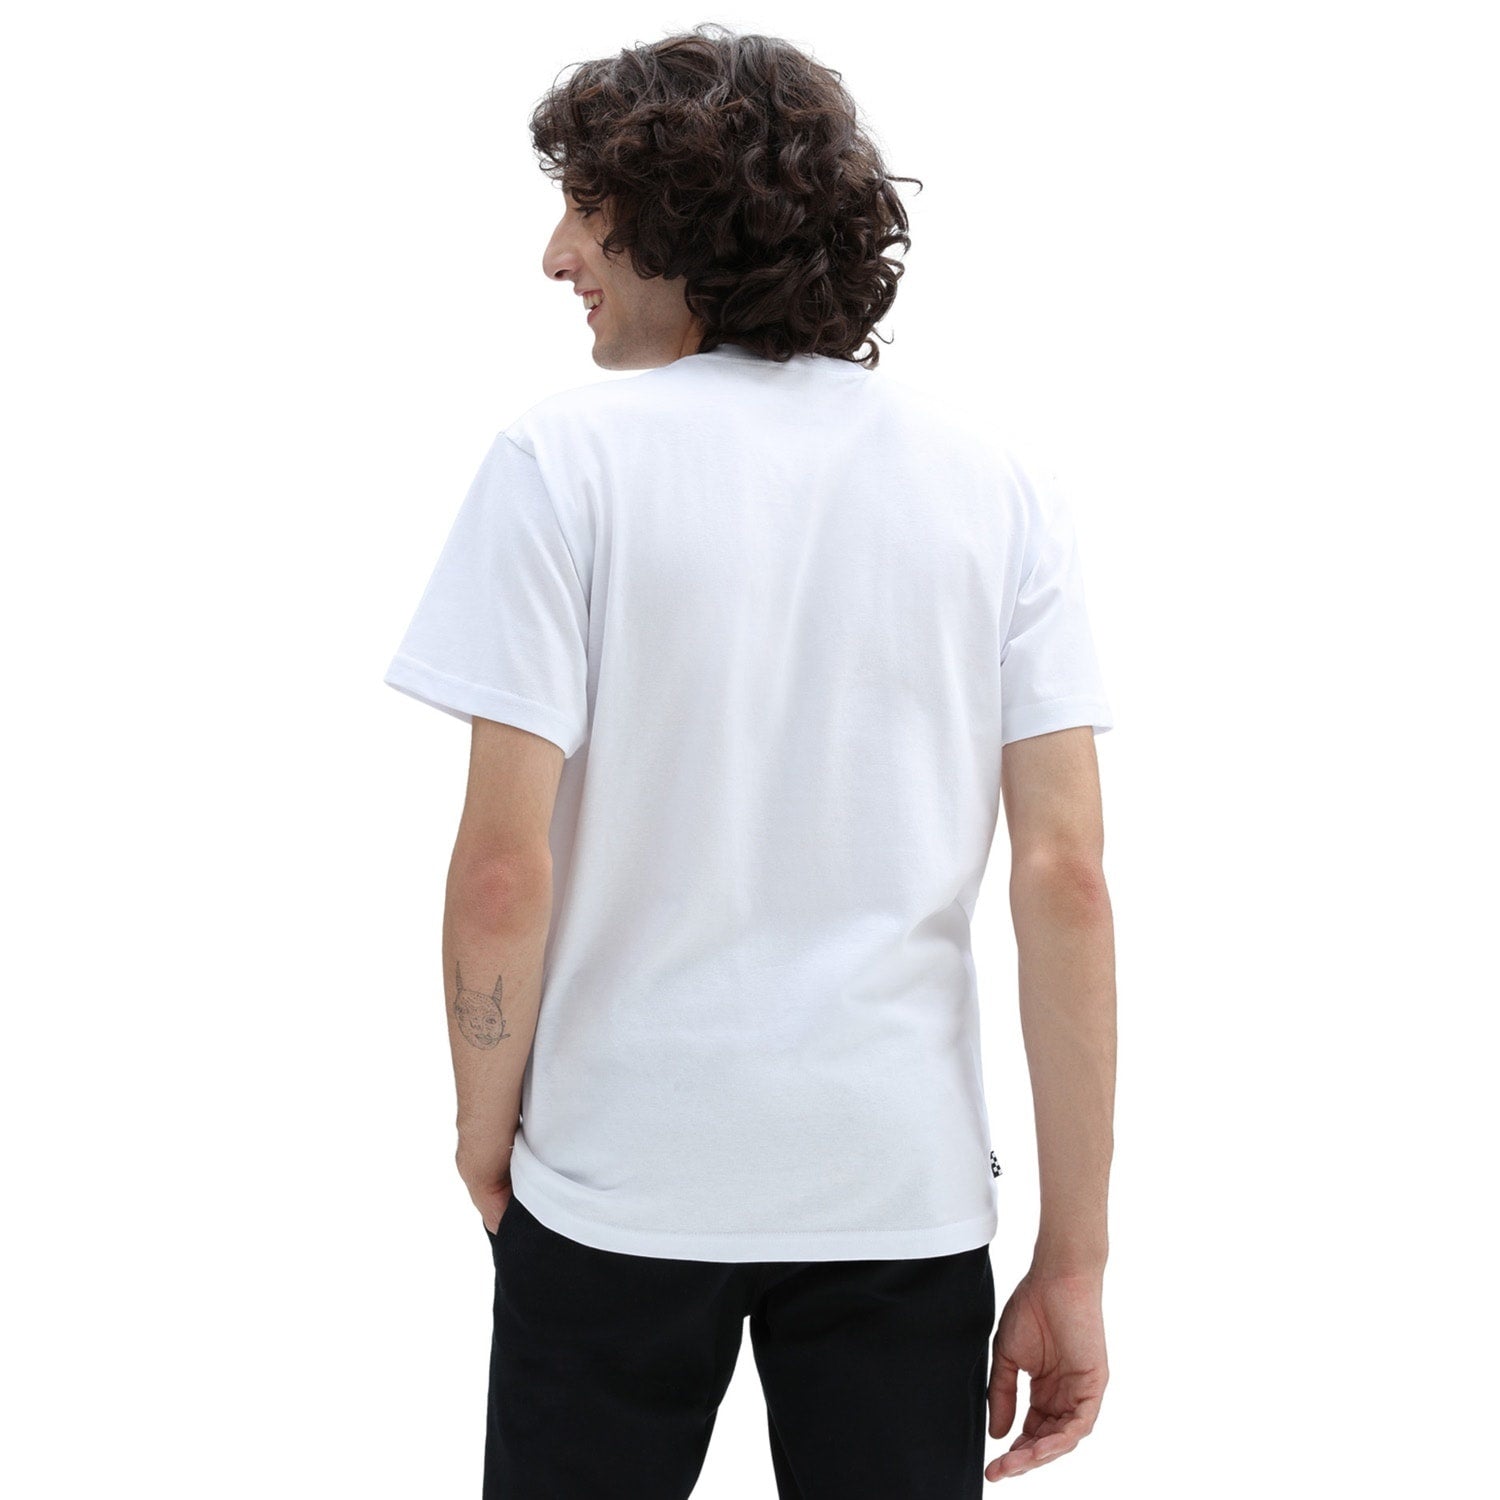 Skate Classics S/S T-Shirt - White